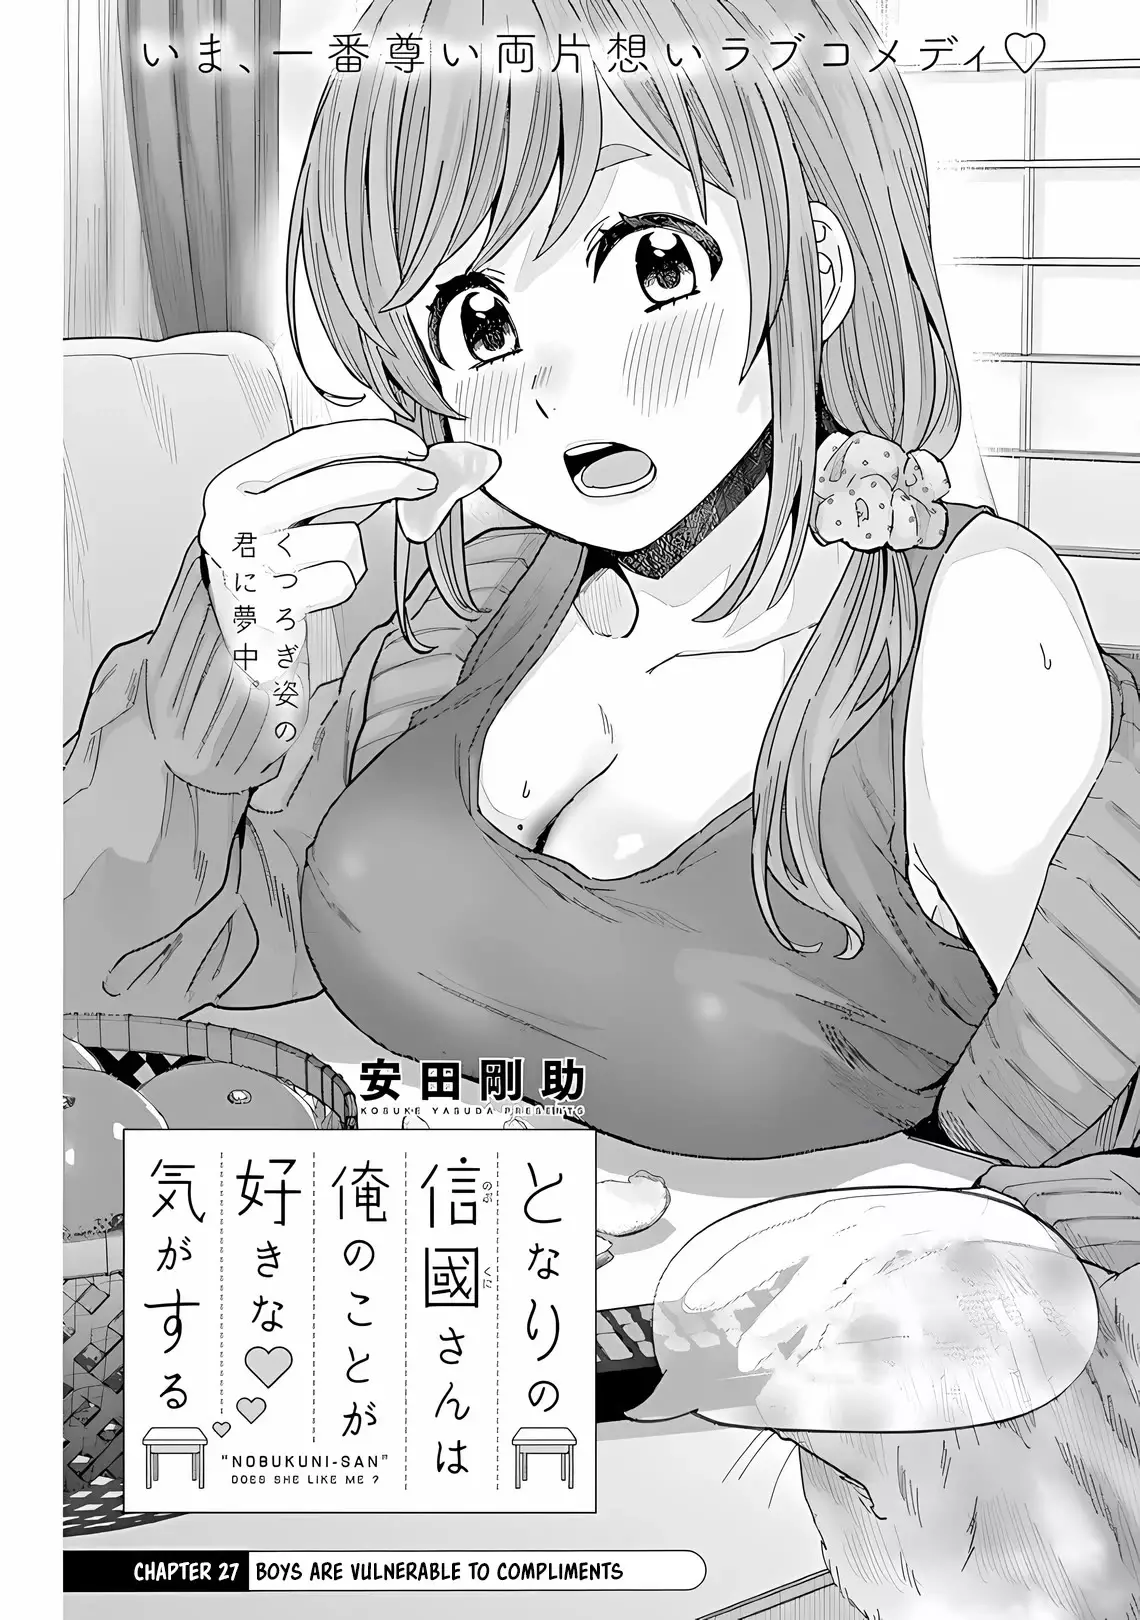 "nobukuni-San" Does She Like Me? - 27 page 2-dad6a039